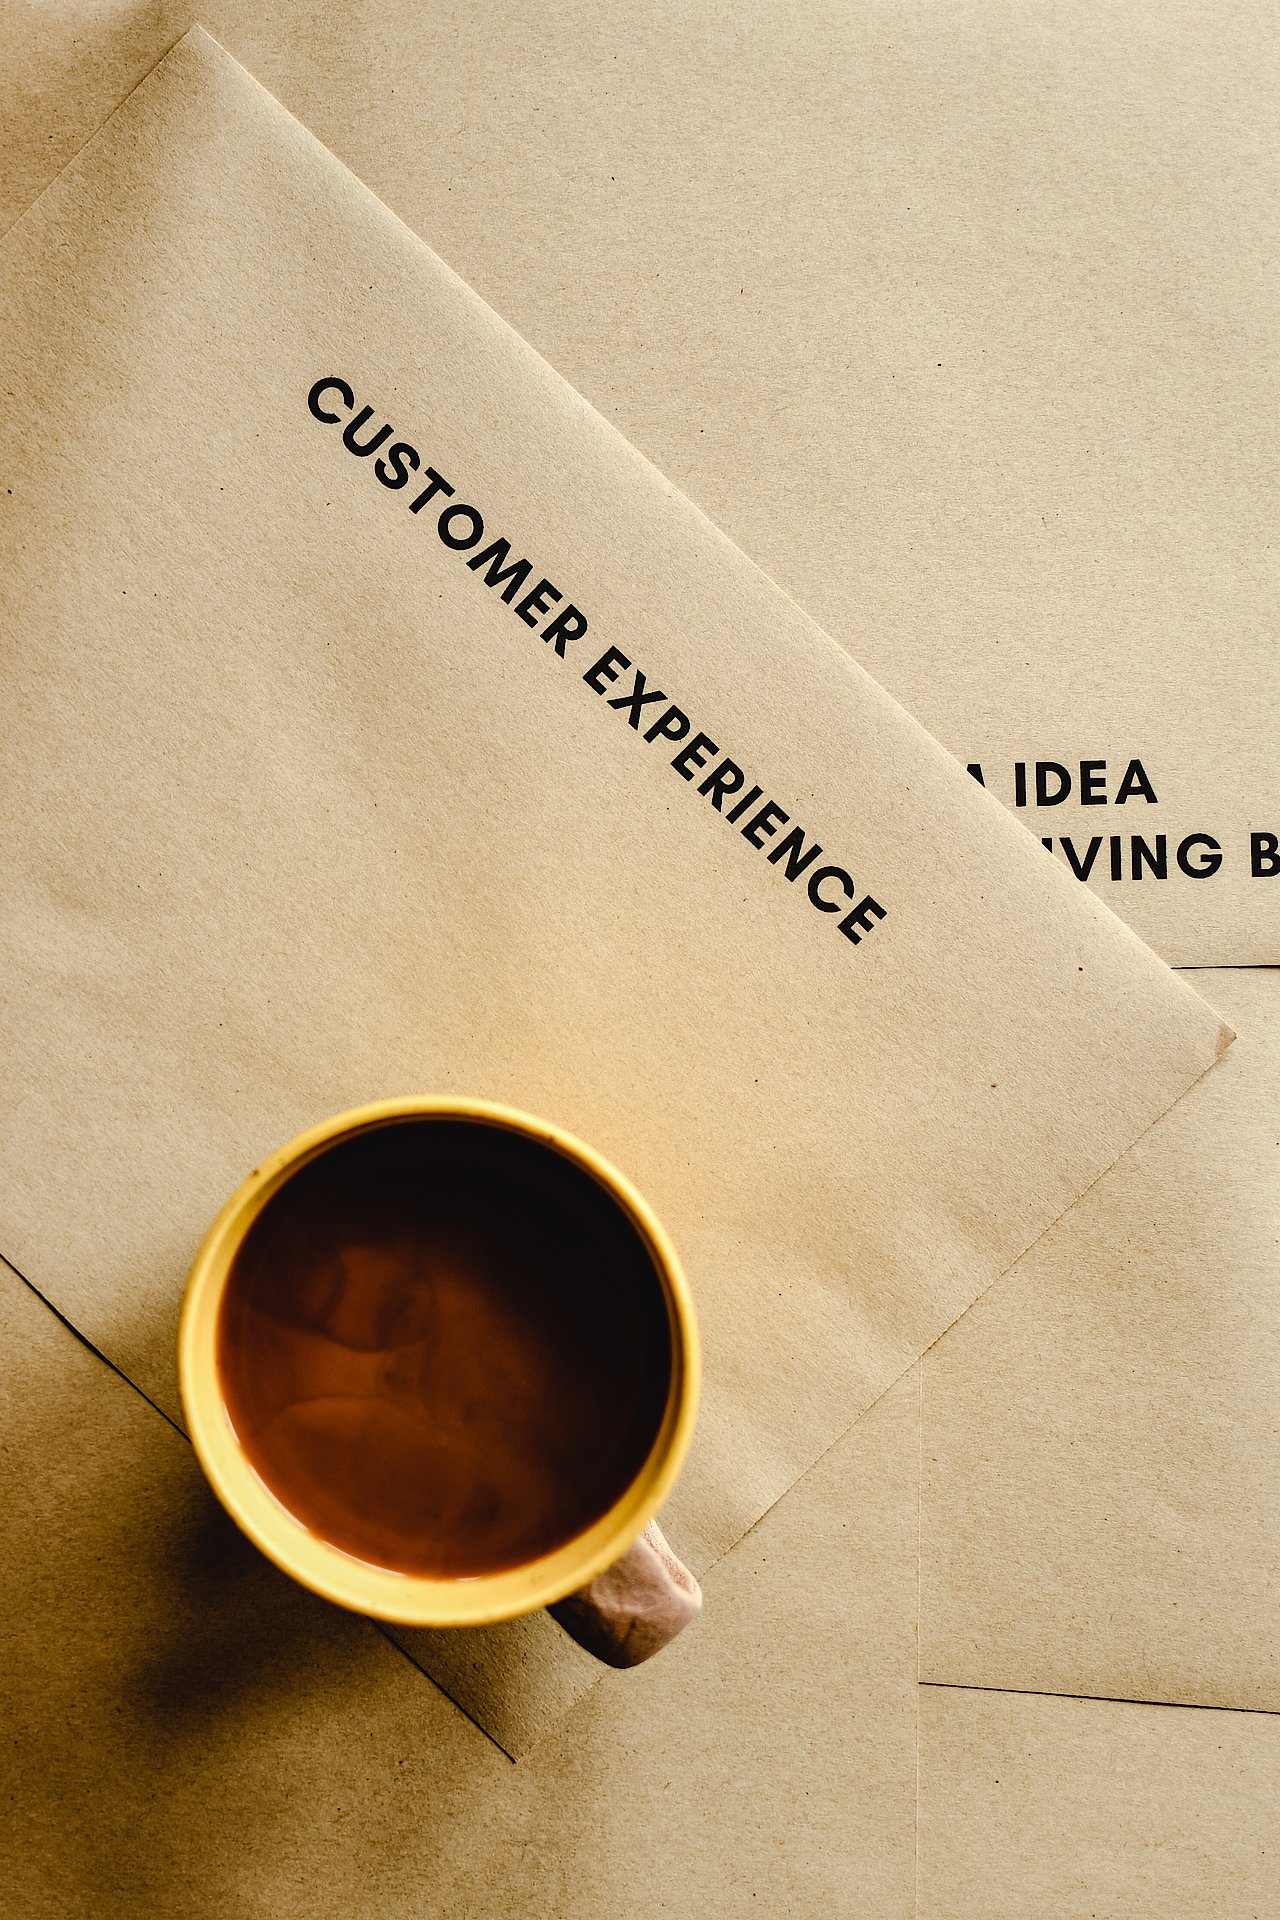 Eine Tasse Kaffee auf einem Briefumschlag, auf dem Customer Experience steht.